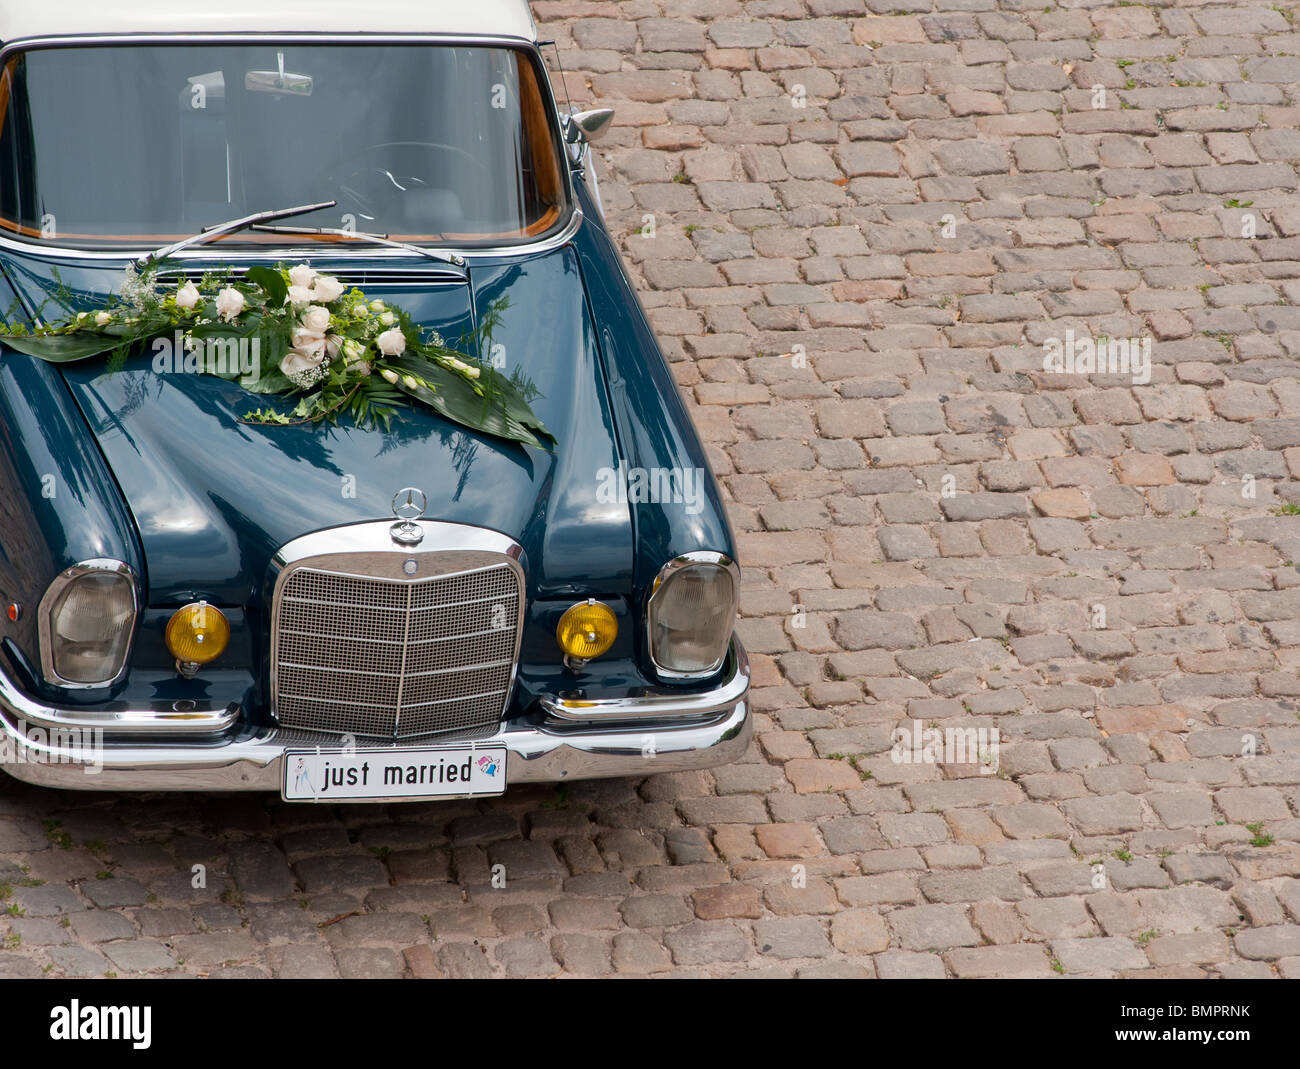 8 Just married-Ideen  hochzeit auto, hochzeitsauto, hochzeitsautos